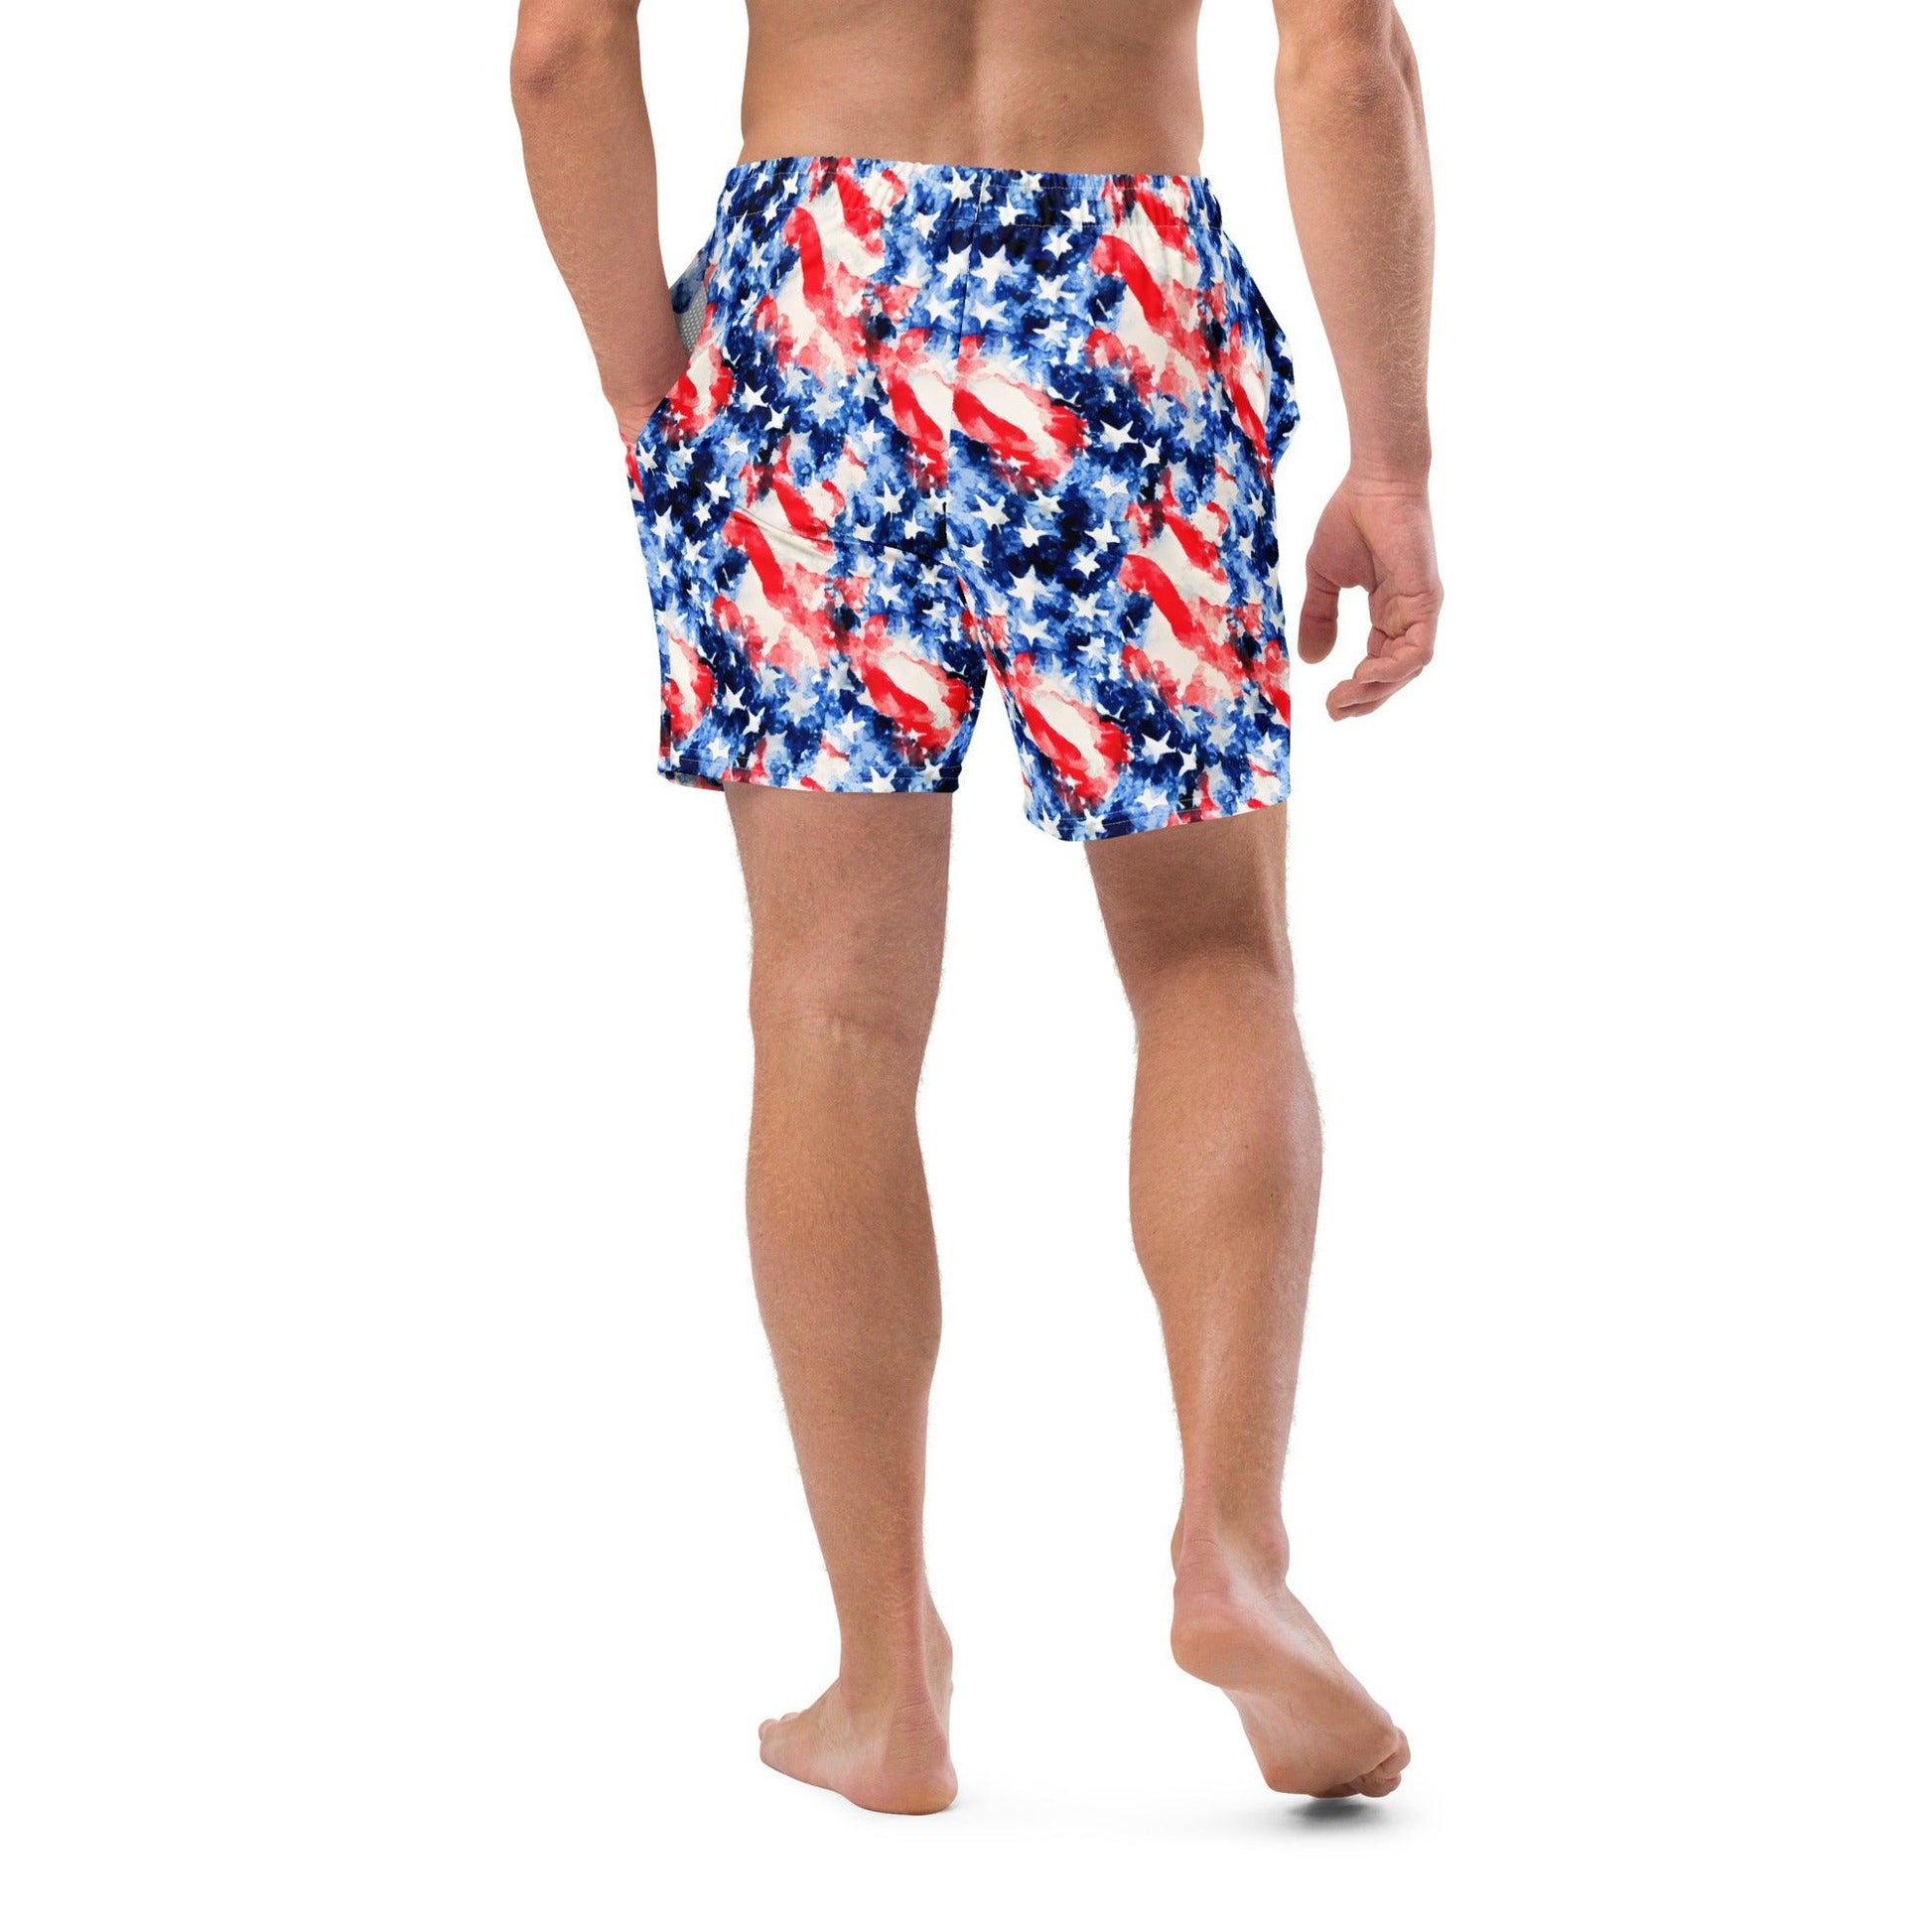 American Flag Recycled Men's Swim Trunks - The Global Wanderer